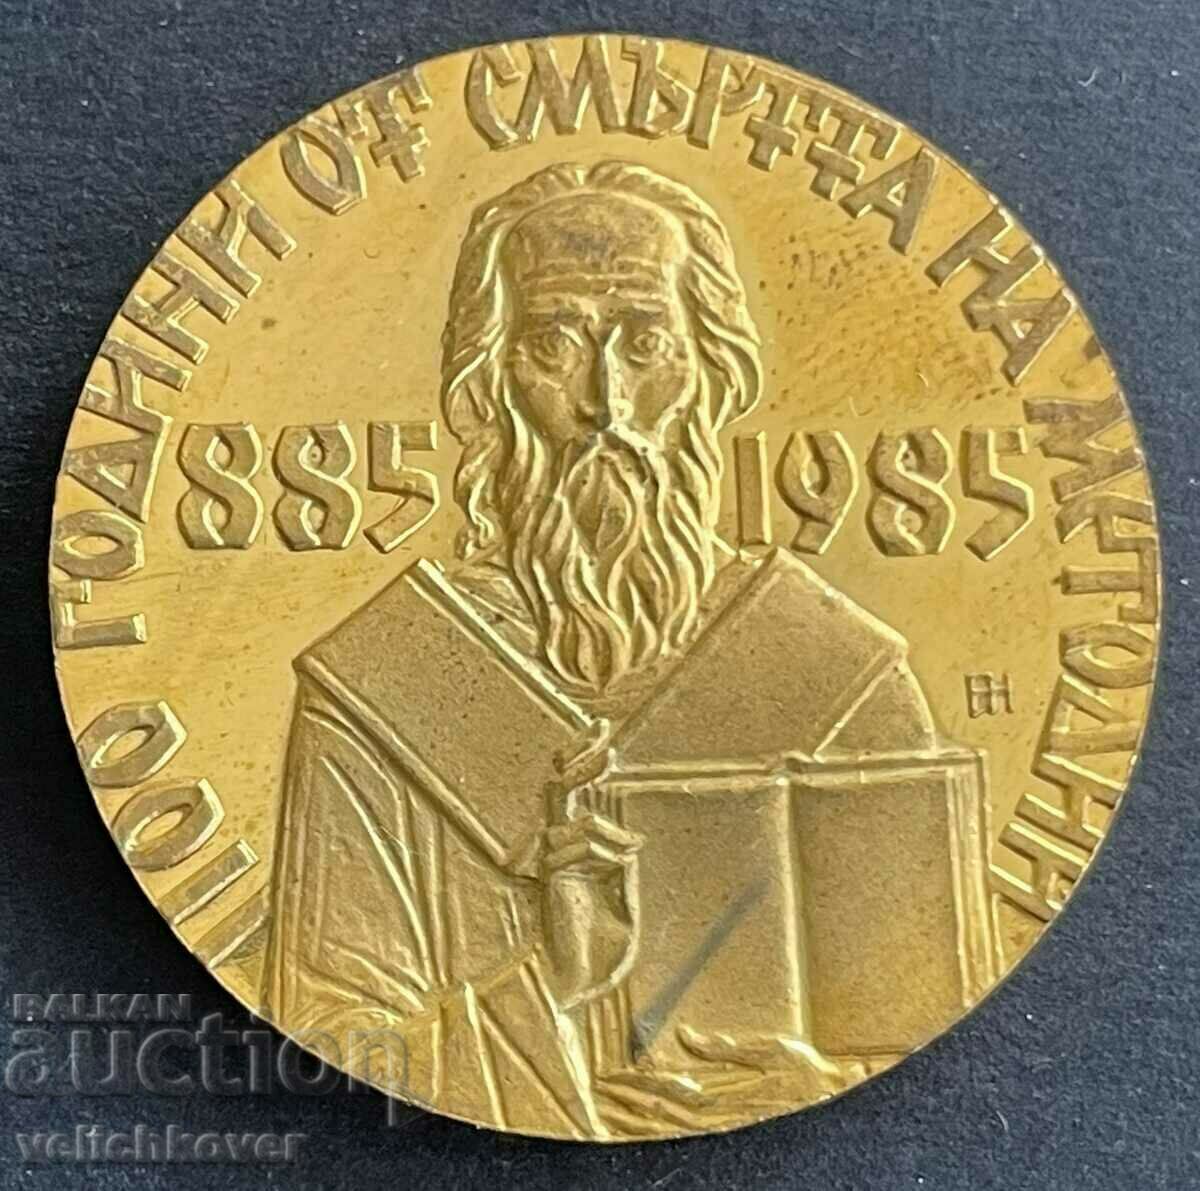 33691 Bulgaria plaque 1100 from the Death of Methodius 1985